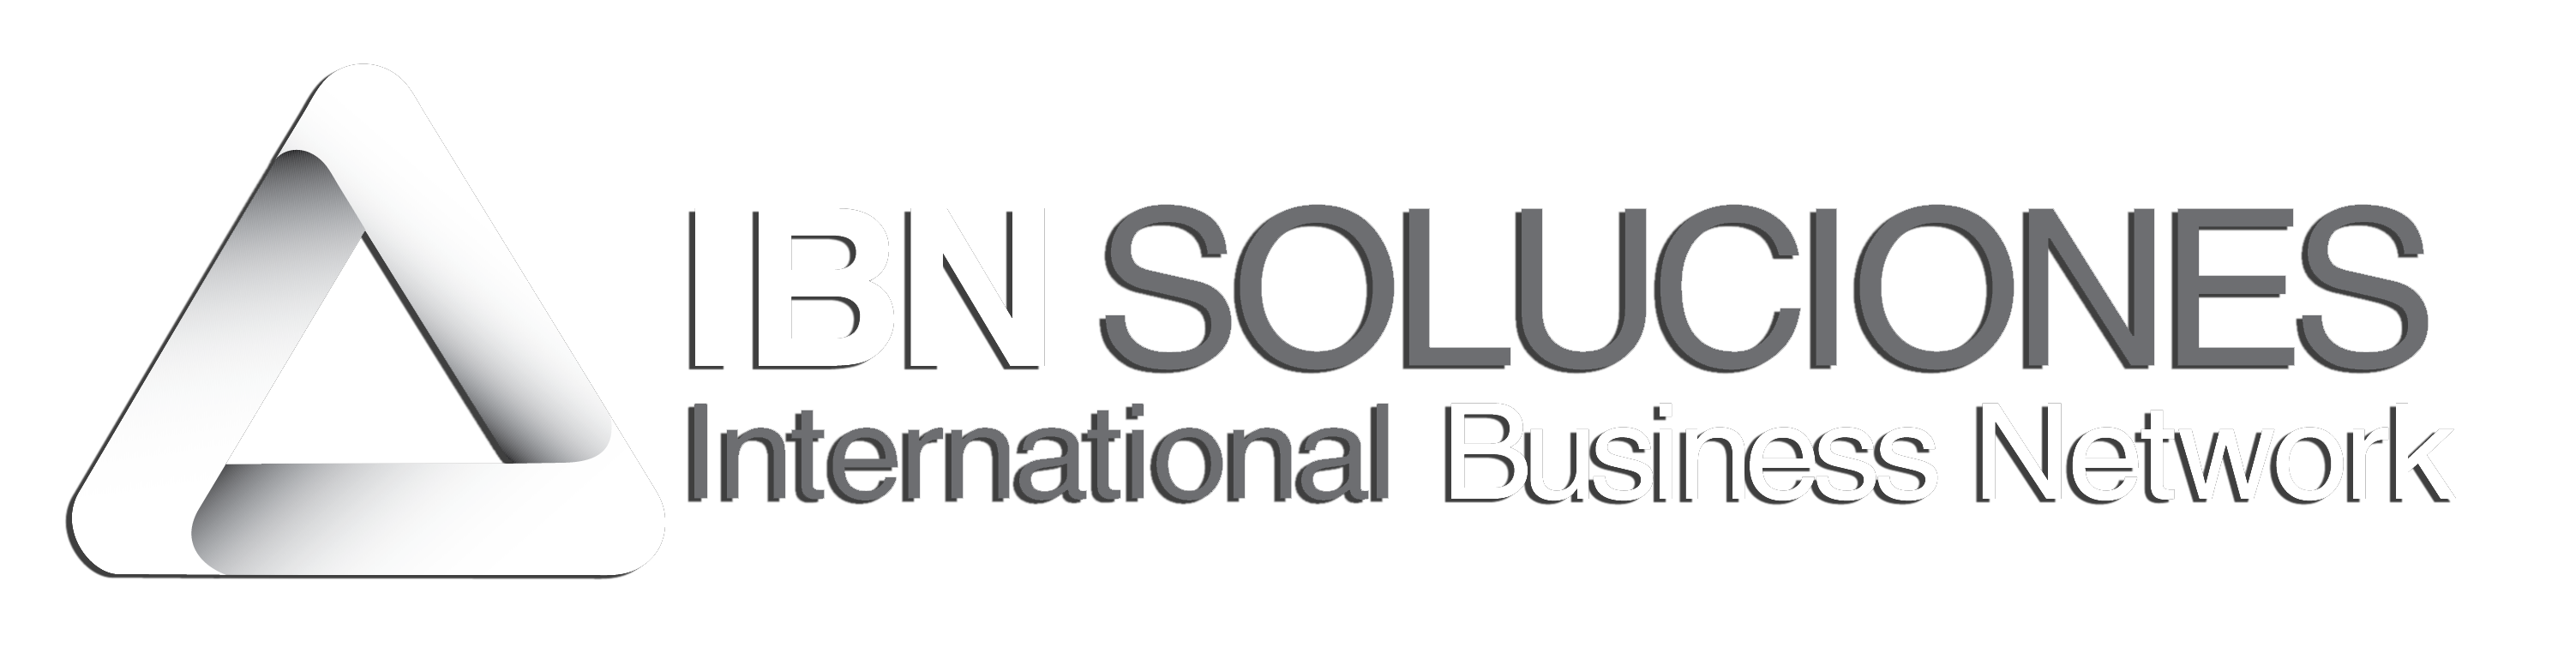 Logo IBN Soluciones Ecuador